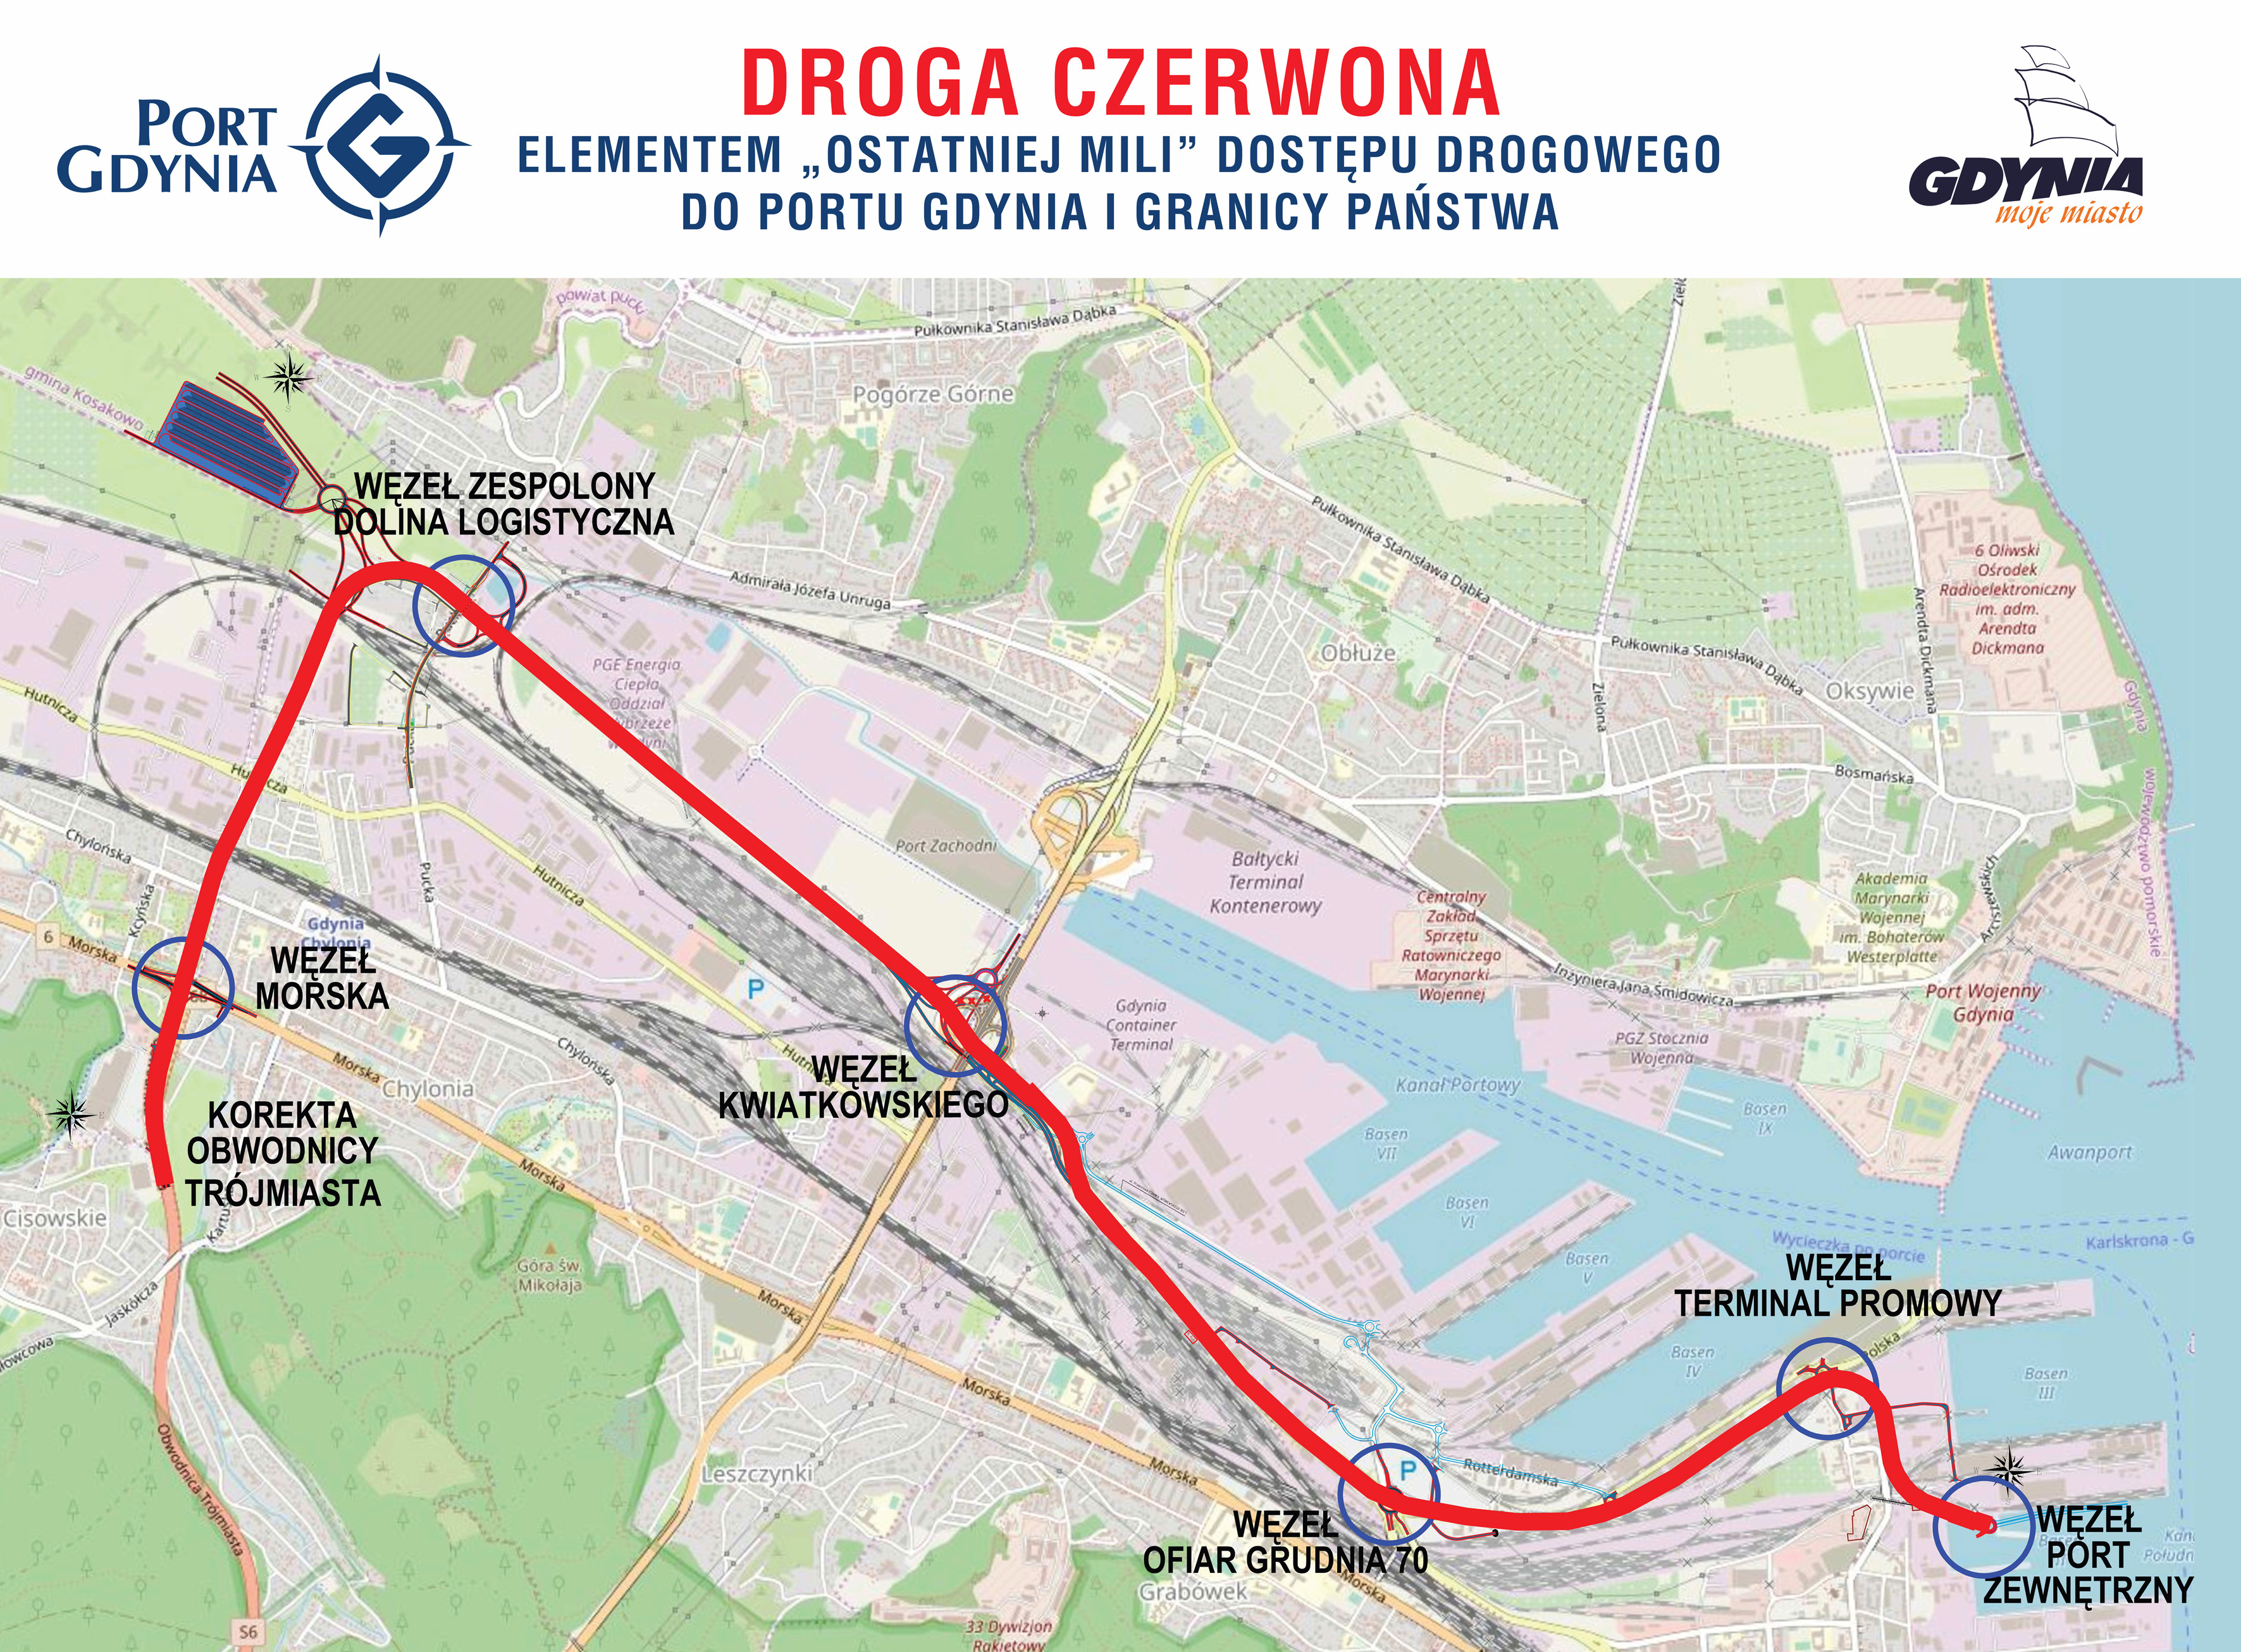 Planowany przebieg Drogi Czerwonej według porozumienia Portu Gdynia i miasta Gdynia z listopada 2020 roku, mat. prasowe Portu Gdynia